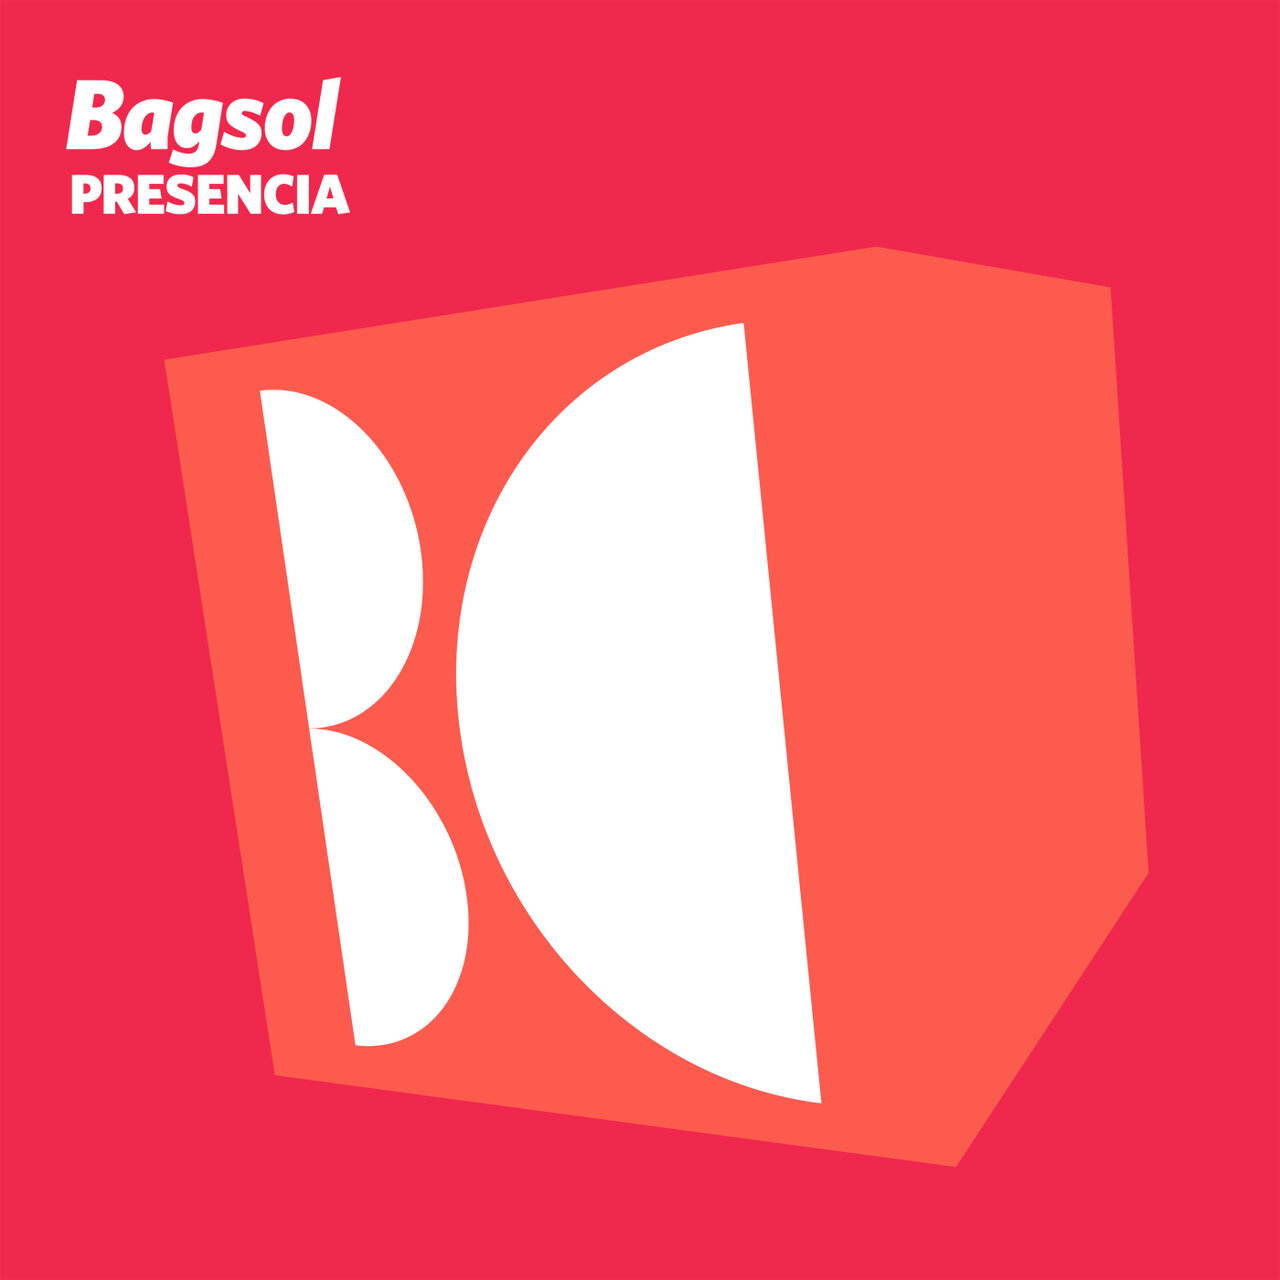 Bagsol - Presencia (Original Mix)